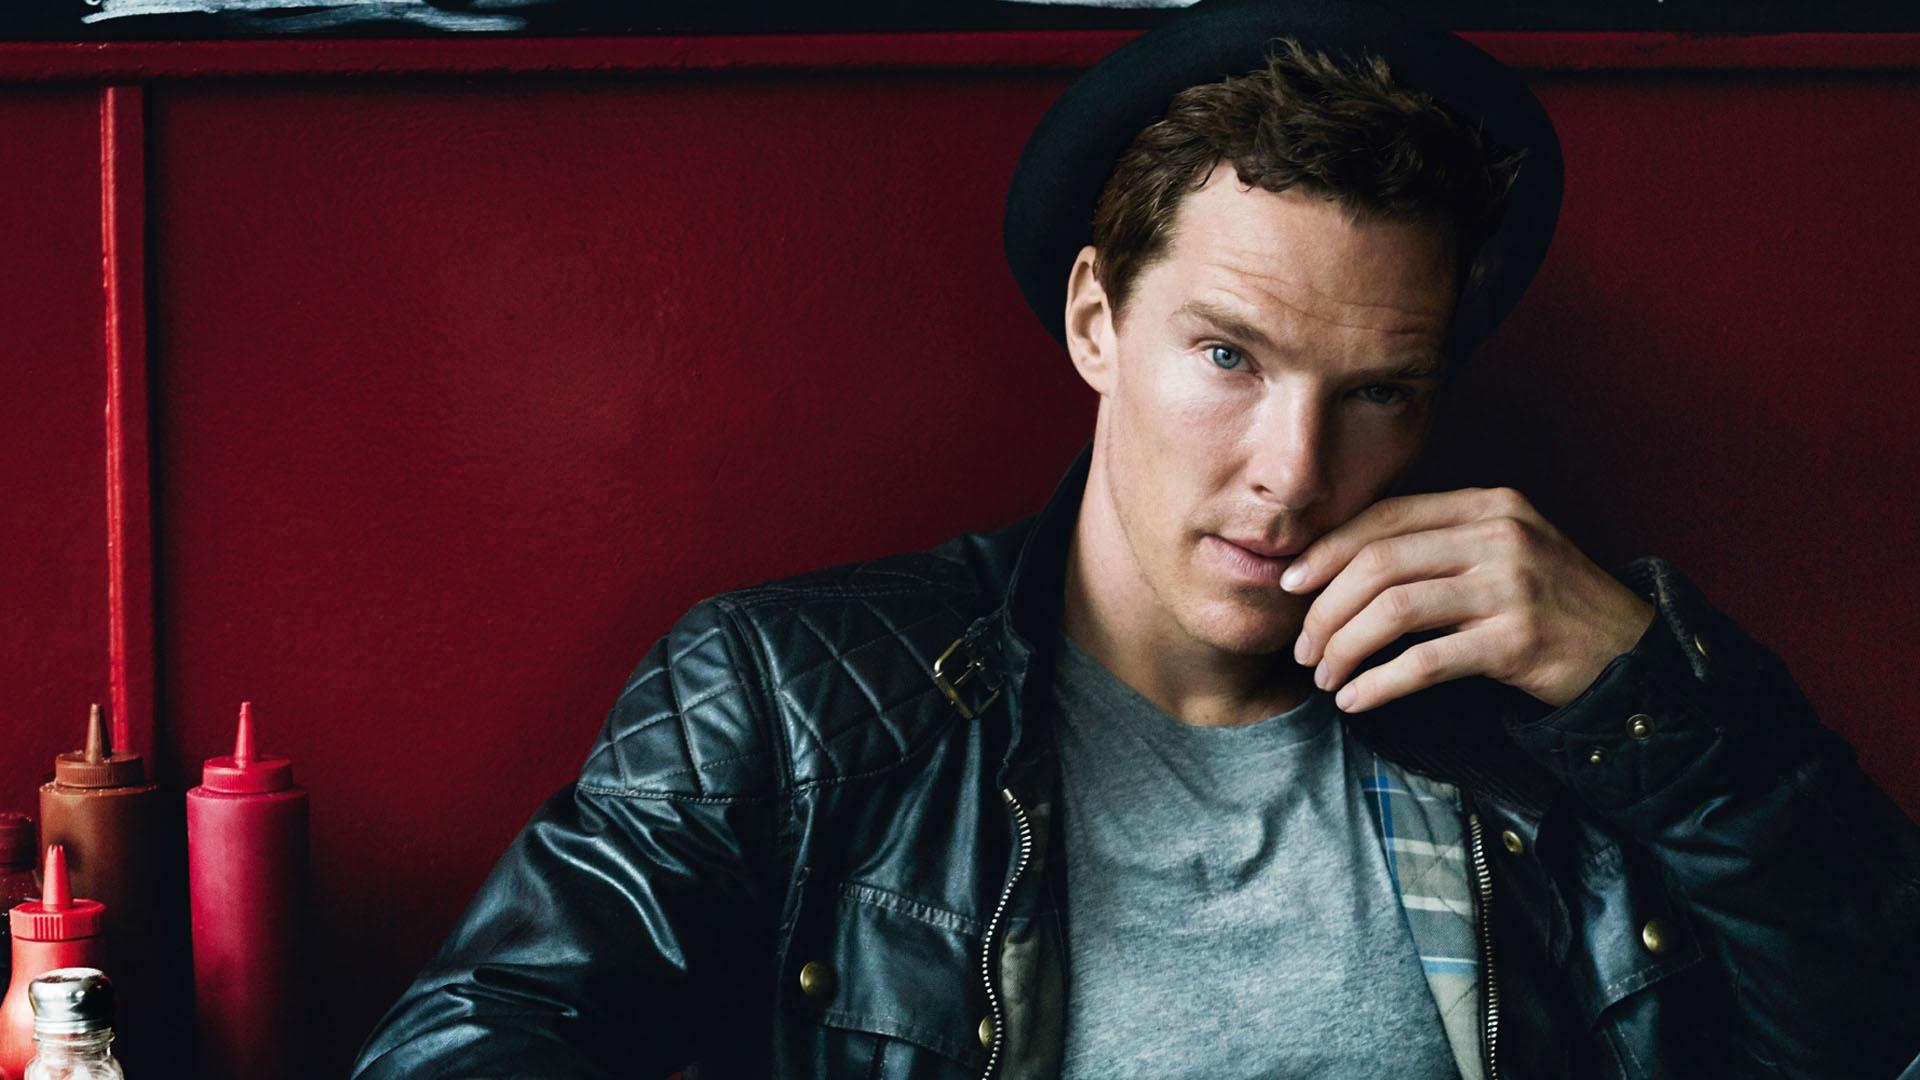 Benedict Cumberbatch Wallpaper Image Photos Pictures